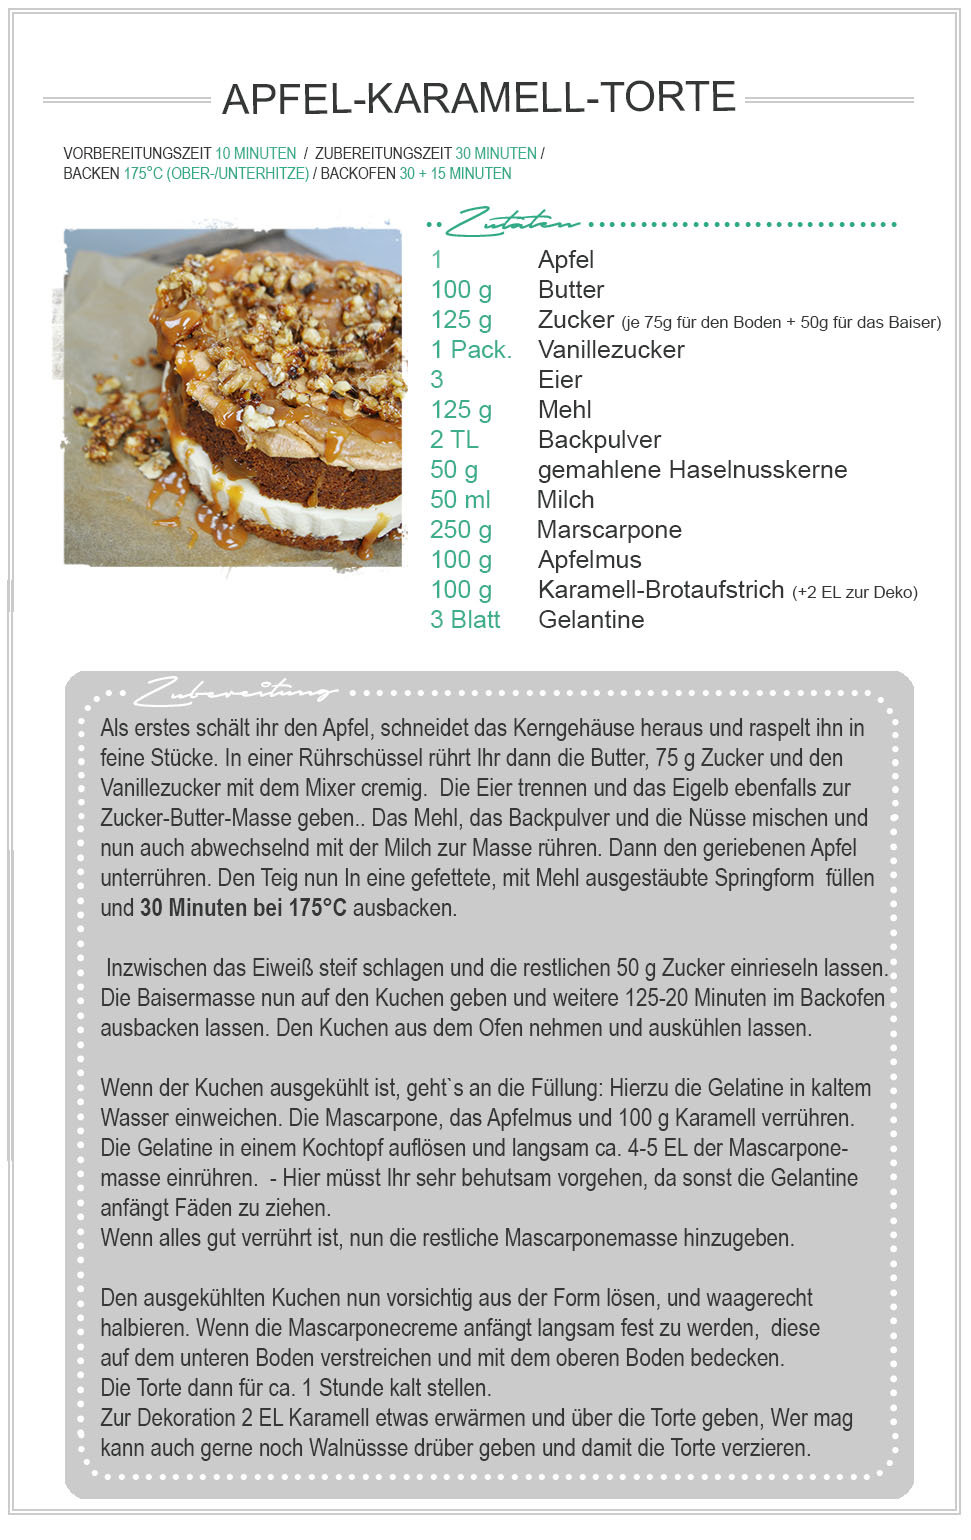 amitades.Blog | Apfel-Karamell-Torte Rezept